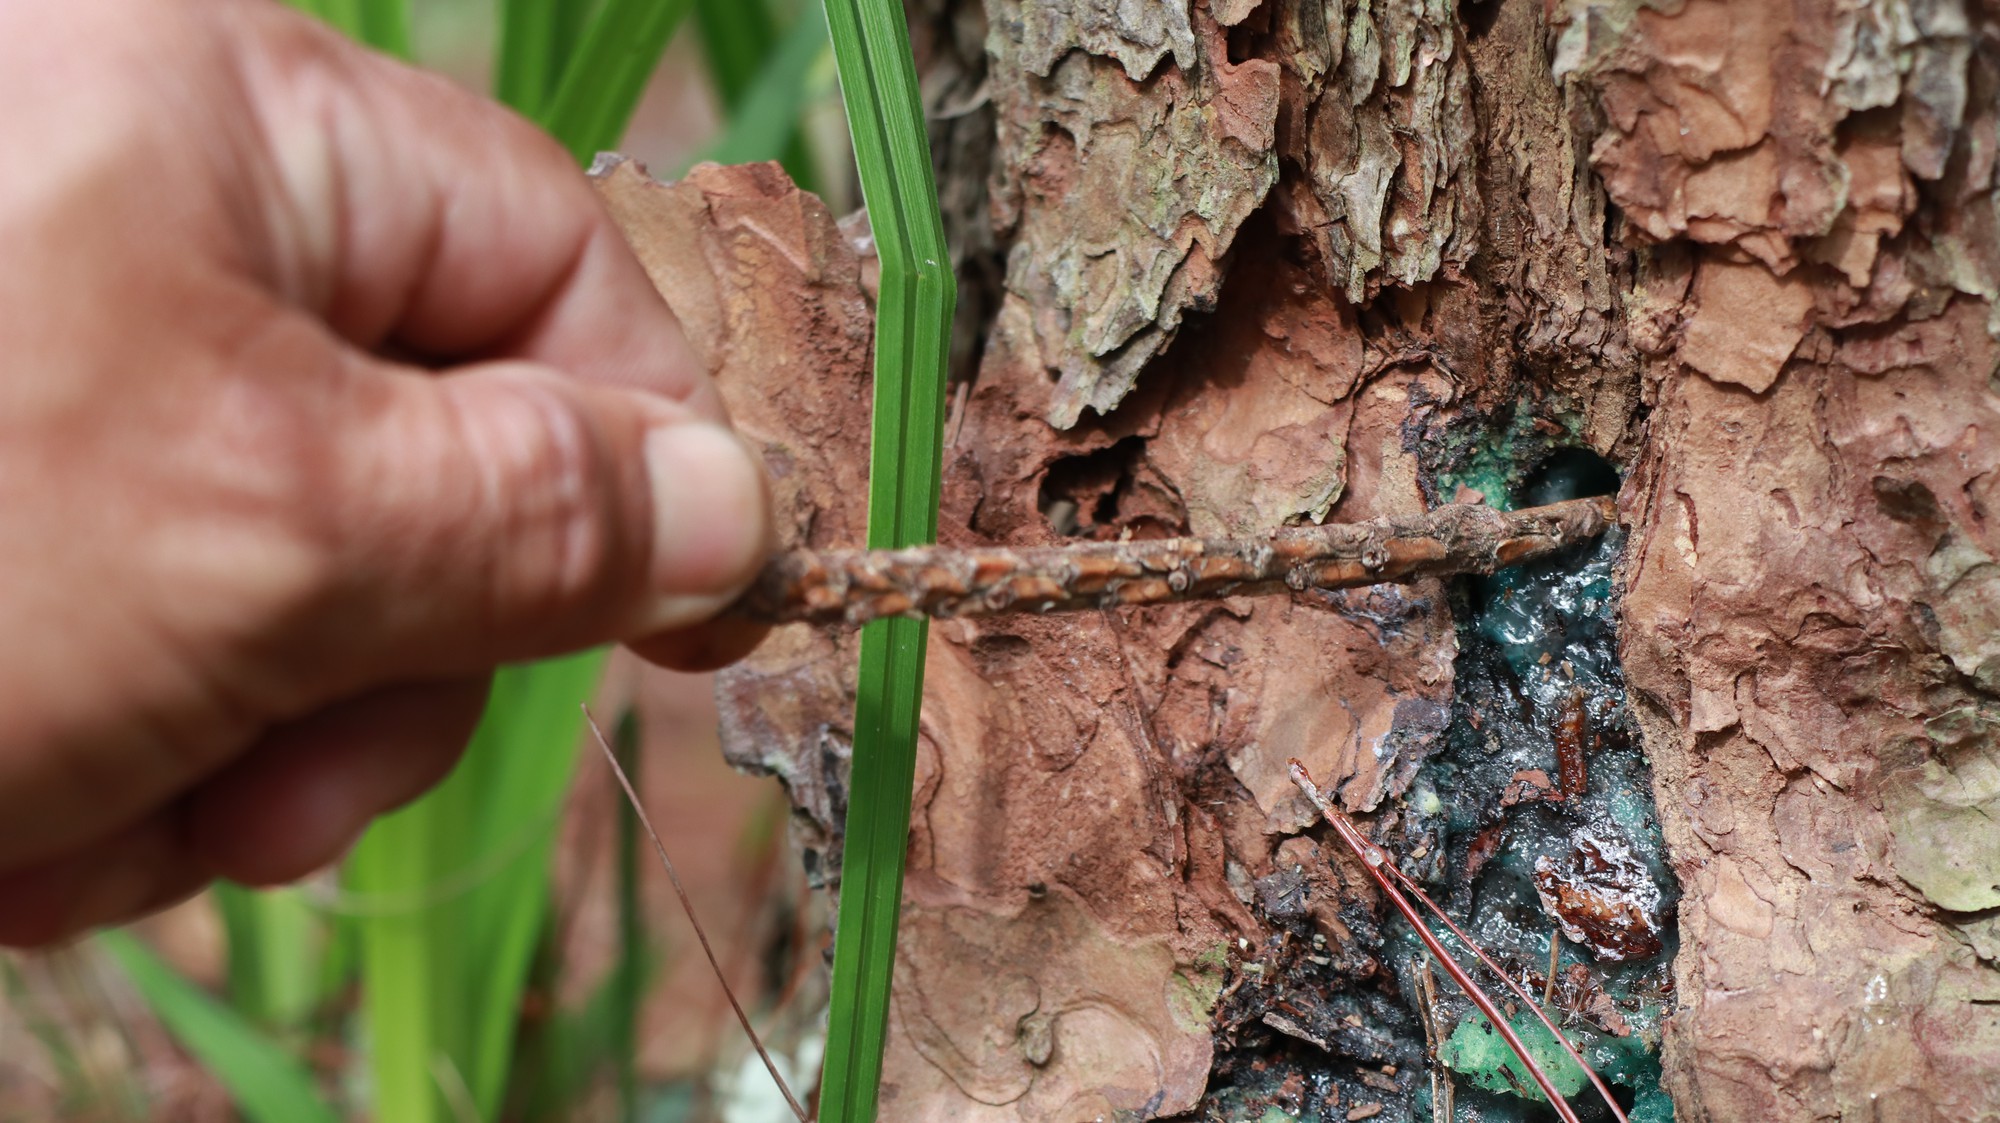 Kiểm điểm 1 tập thể, 3 cá nhân nhân liên quan vụ rừng thông bị “đầu độc” tại Lâm Đồng - Ảnh 4.